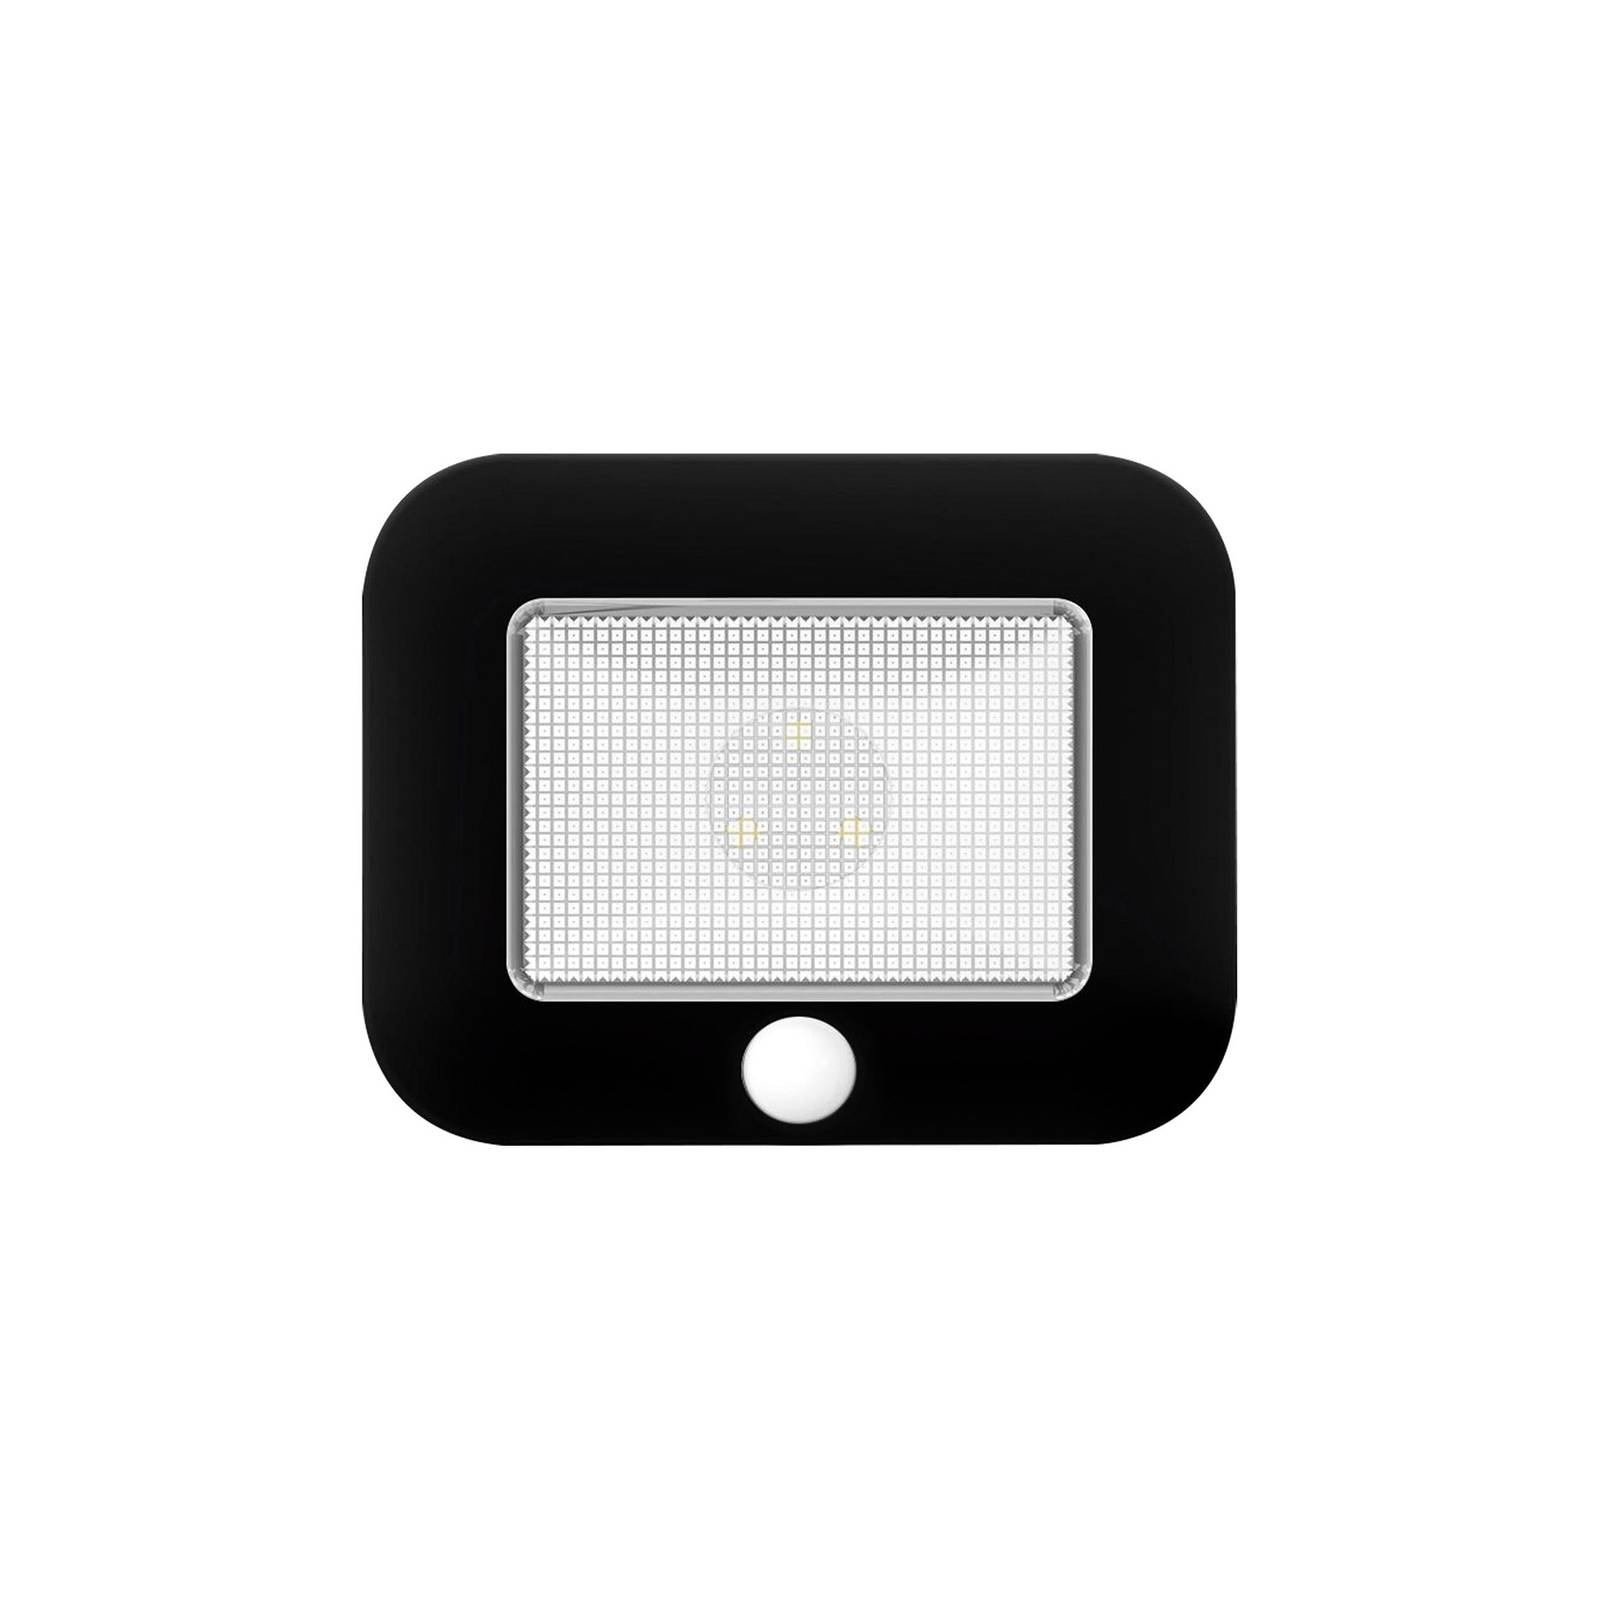 LED-kaapinalusvalaisin Mobina Sensor 10 musta